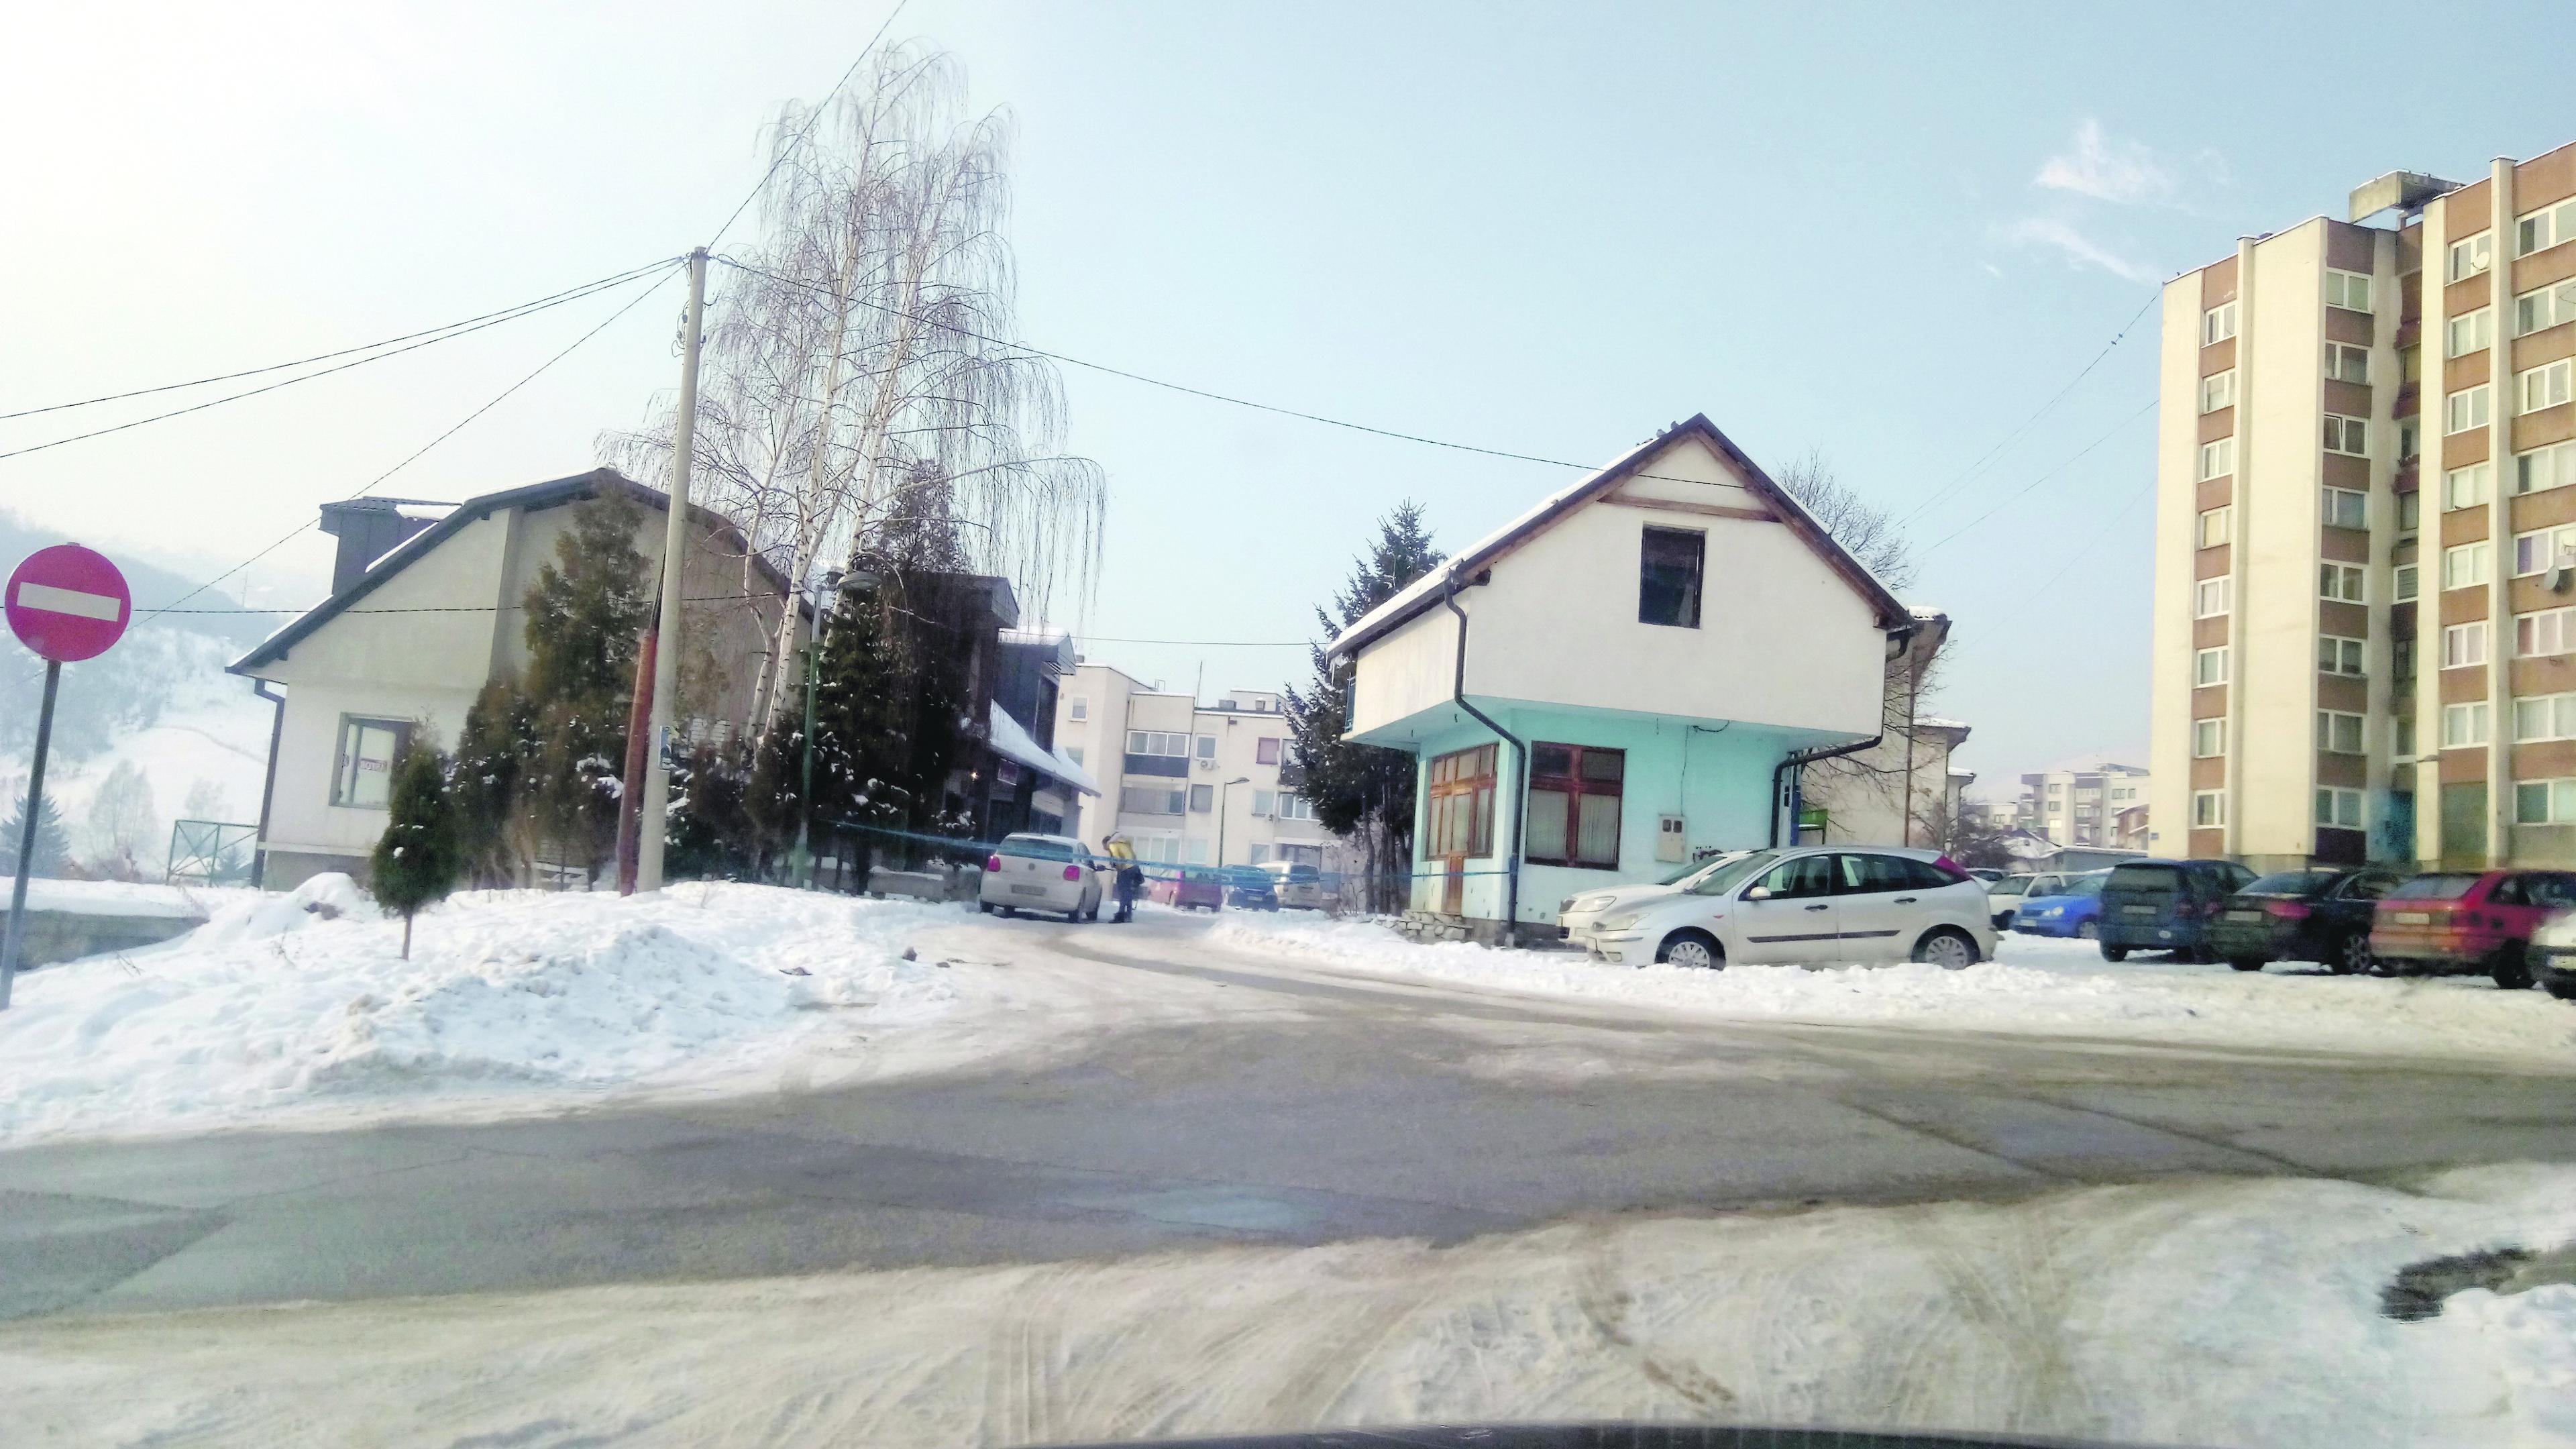 Ubistvo se dogodilo u lokalu "Astor" u Travniku - Avaz